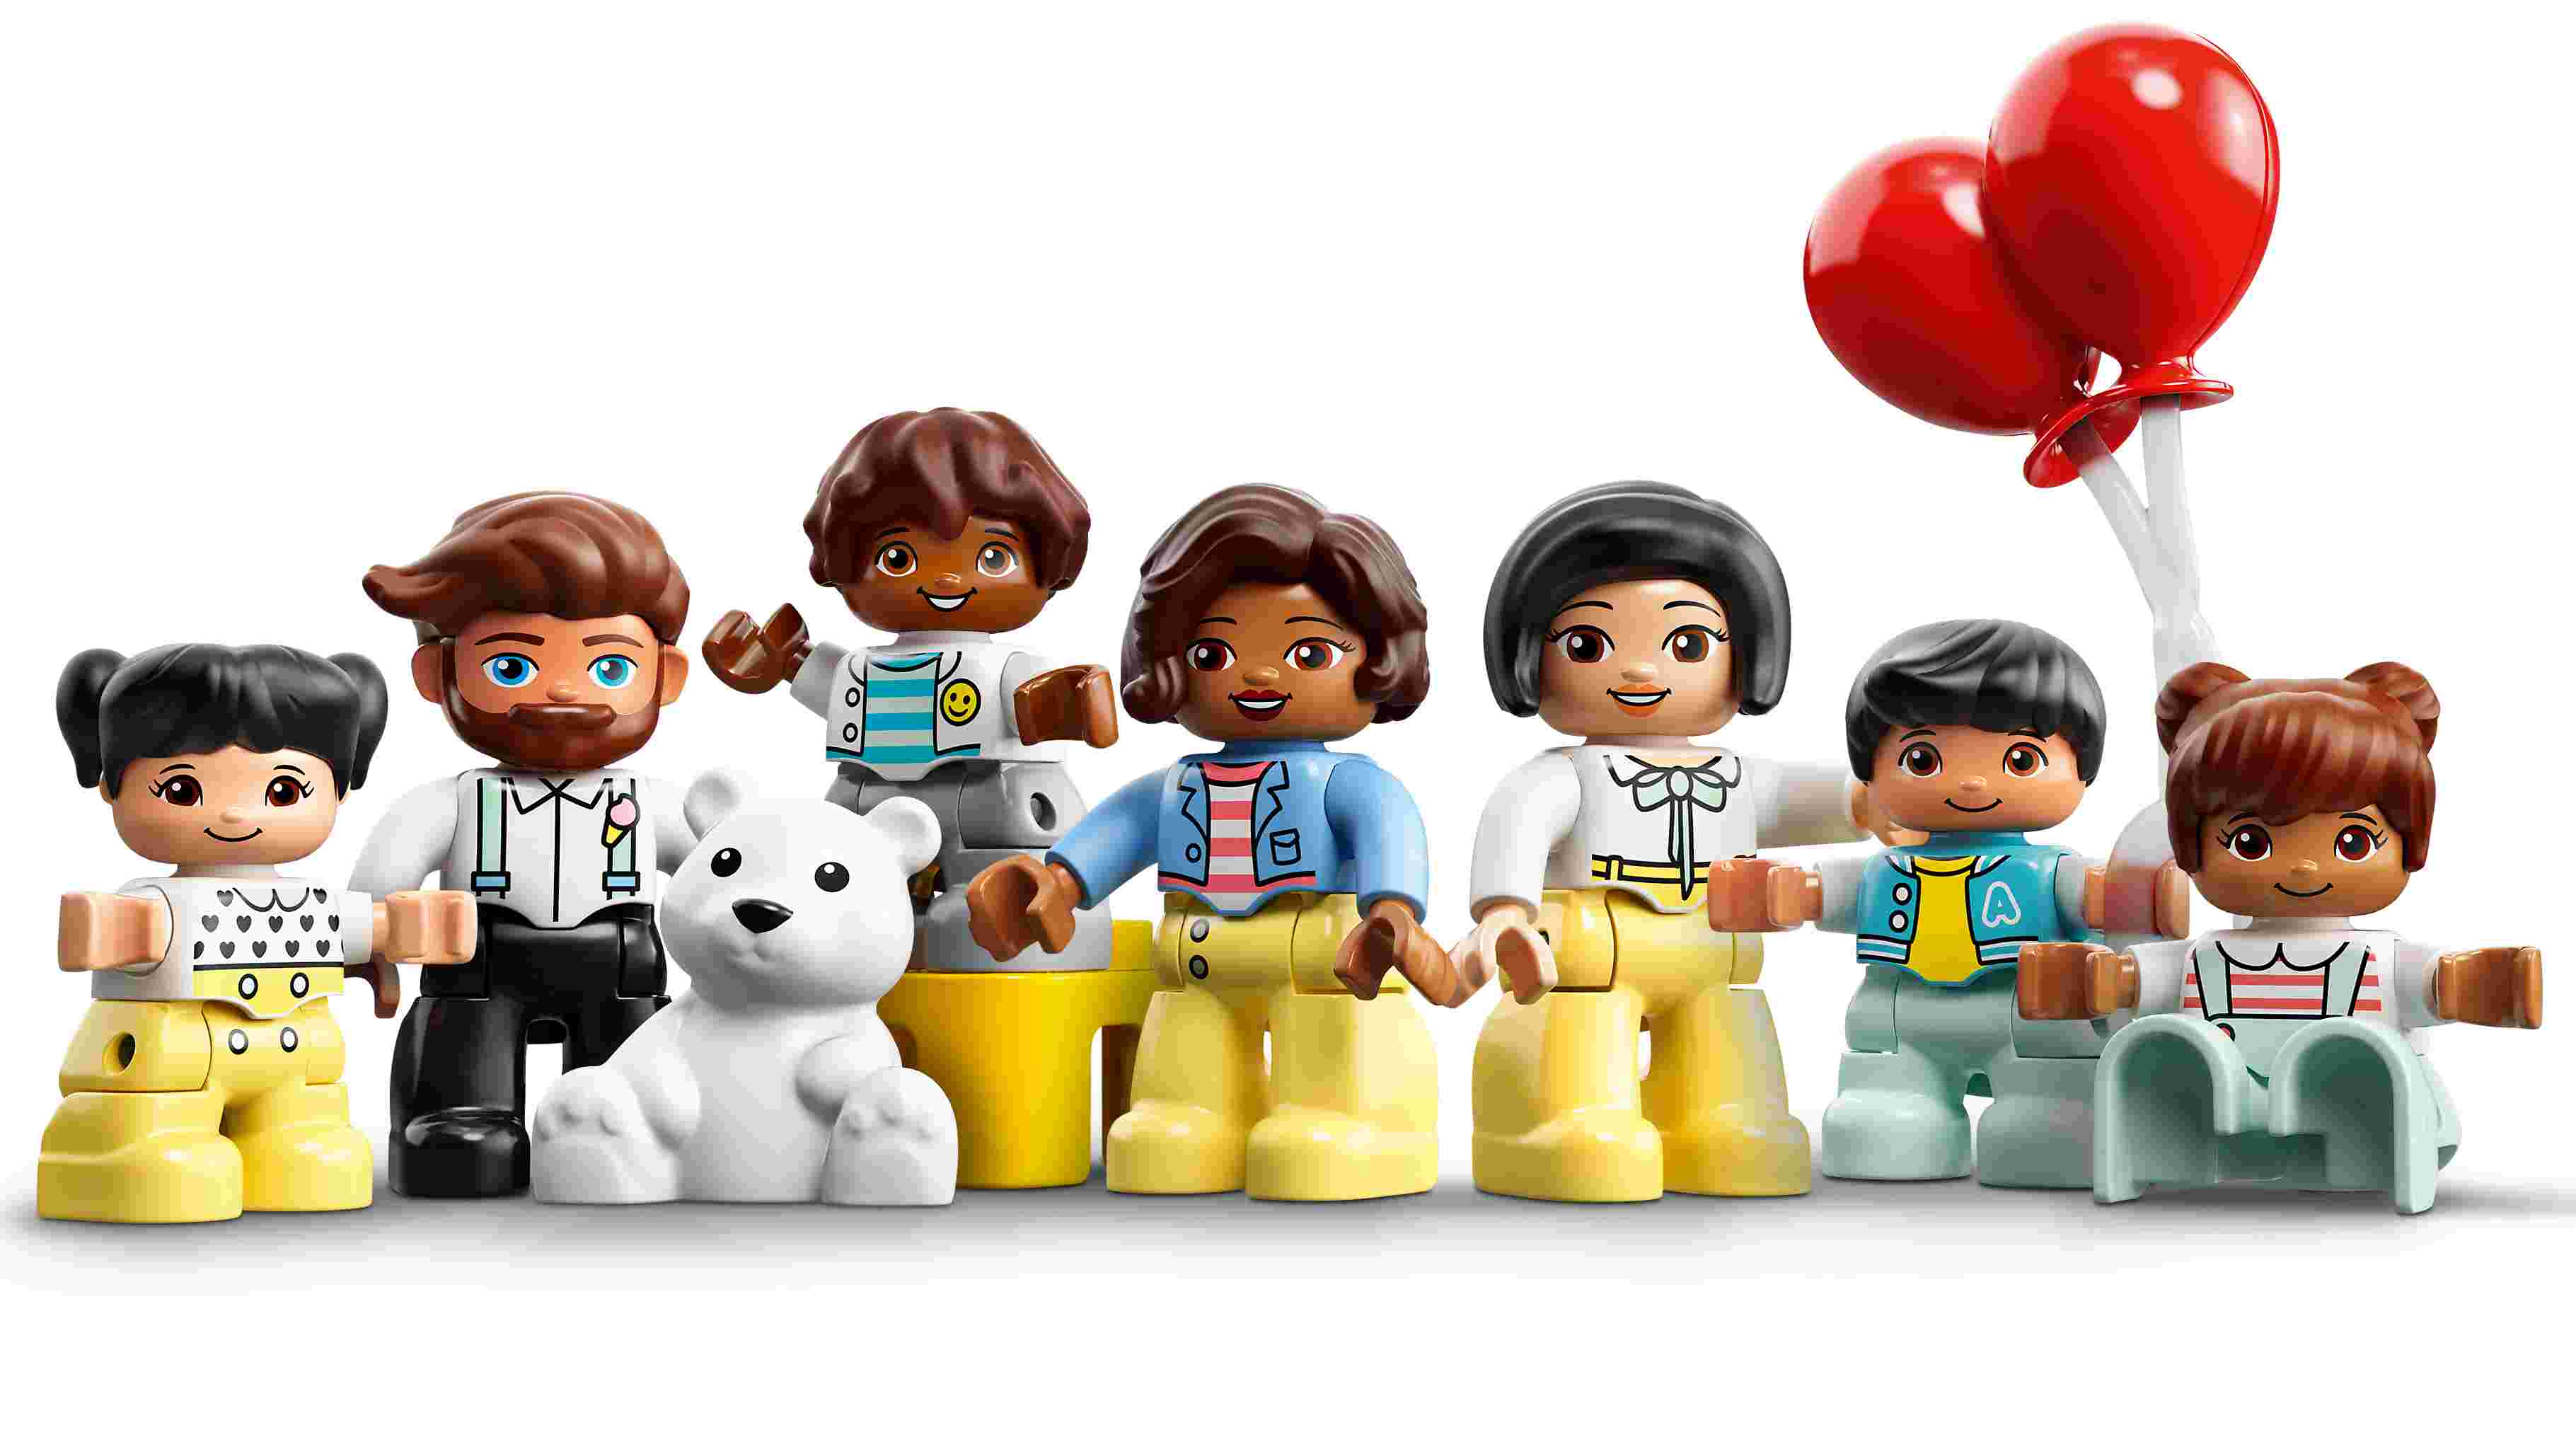 LEGO 10956 DUPLO Erlebnispark, Kinderspielzeug ab 2 Jahre mit Jahrmarkt und Zug